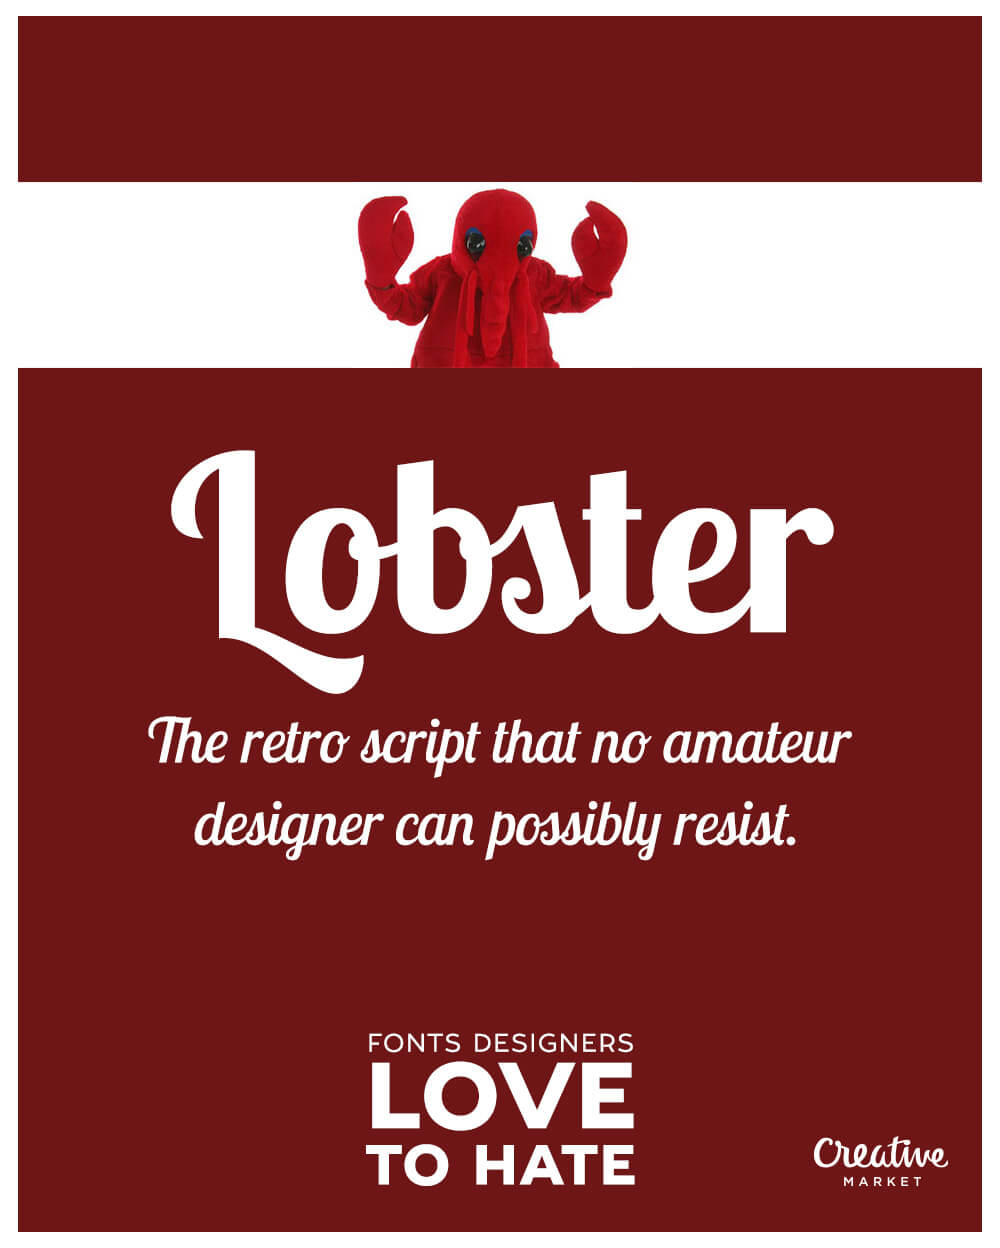 Worst Fonts Ever Lobster